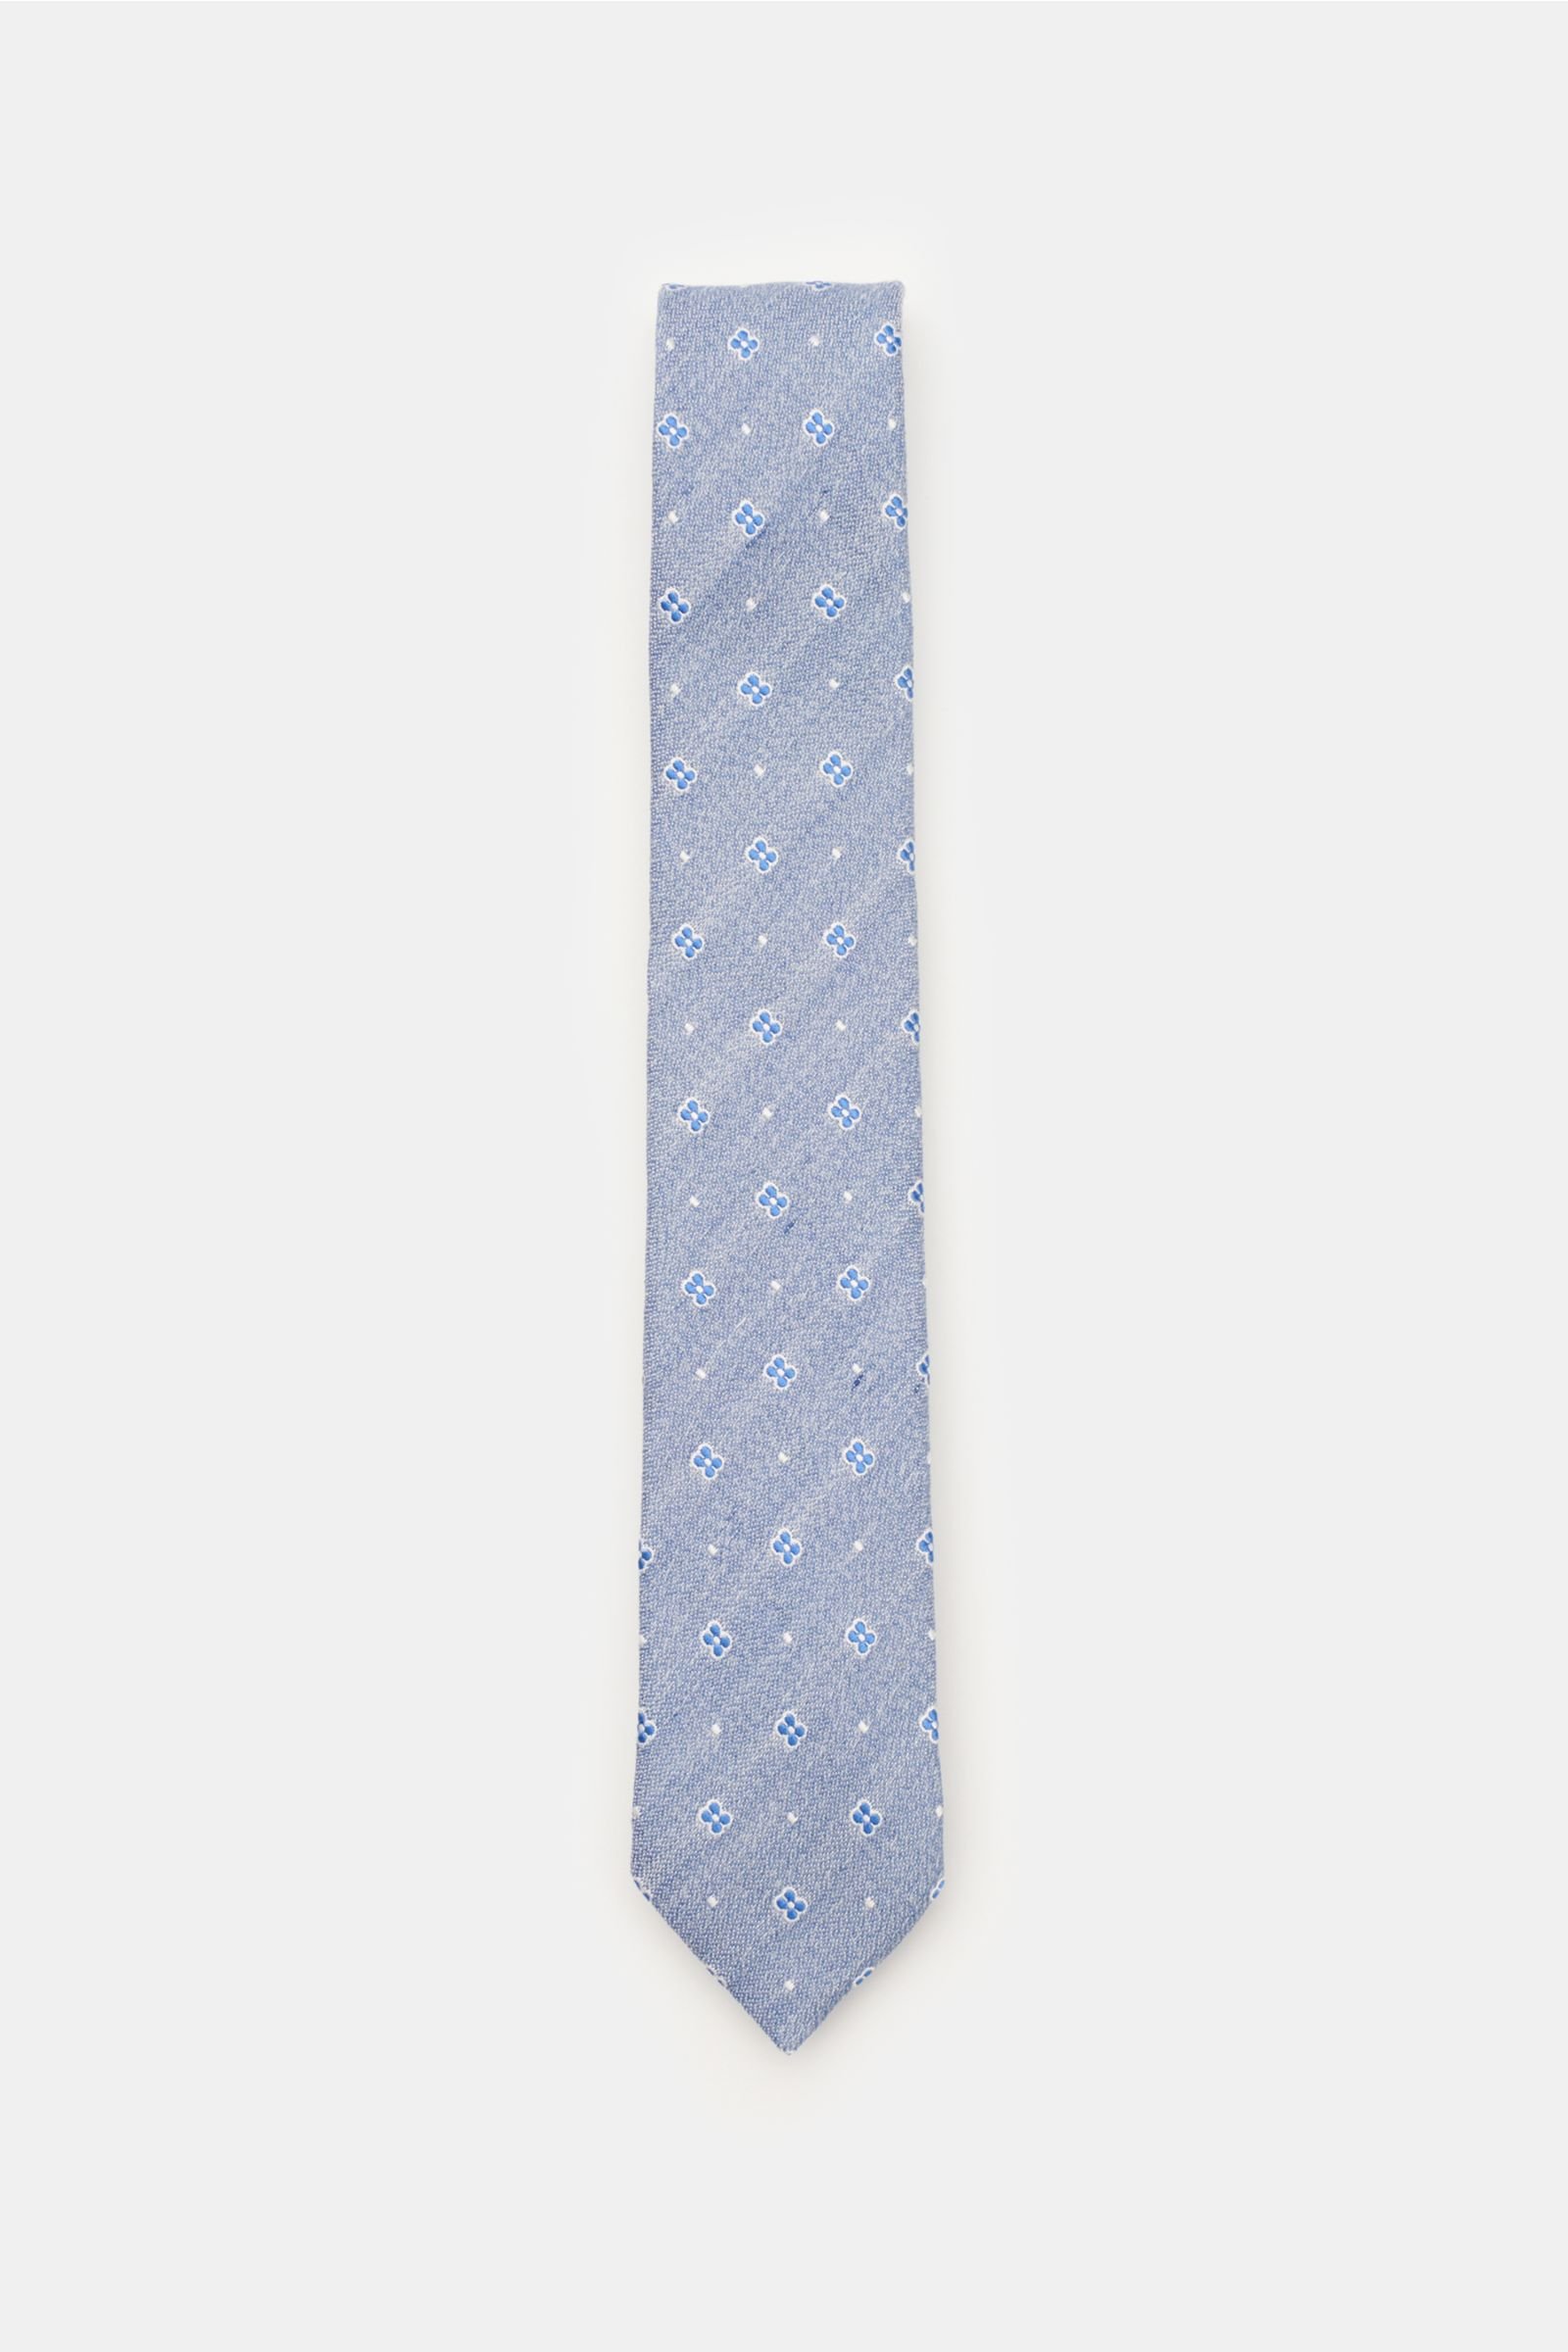 Tie smoky blue/blue patterned